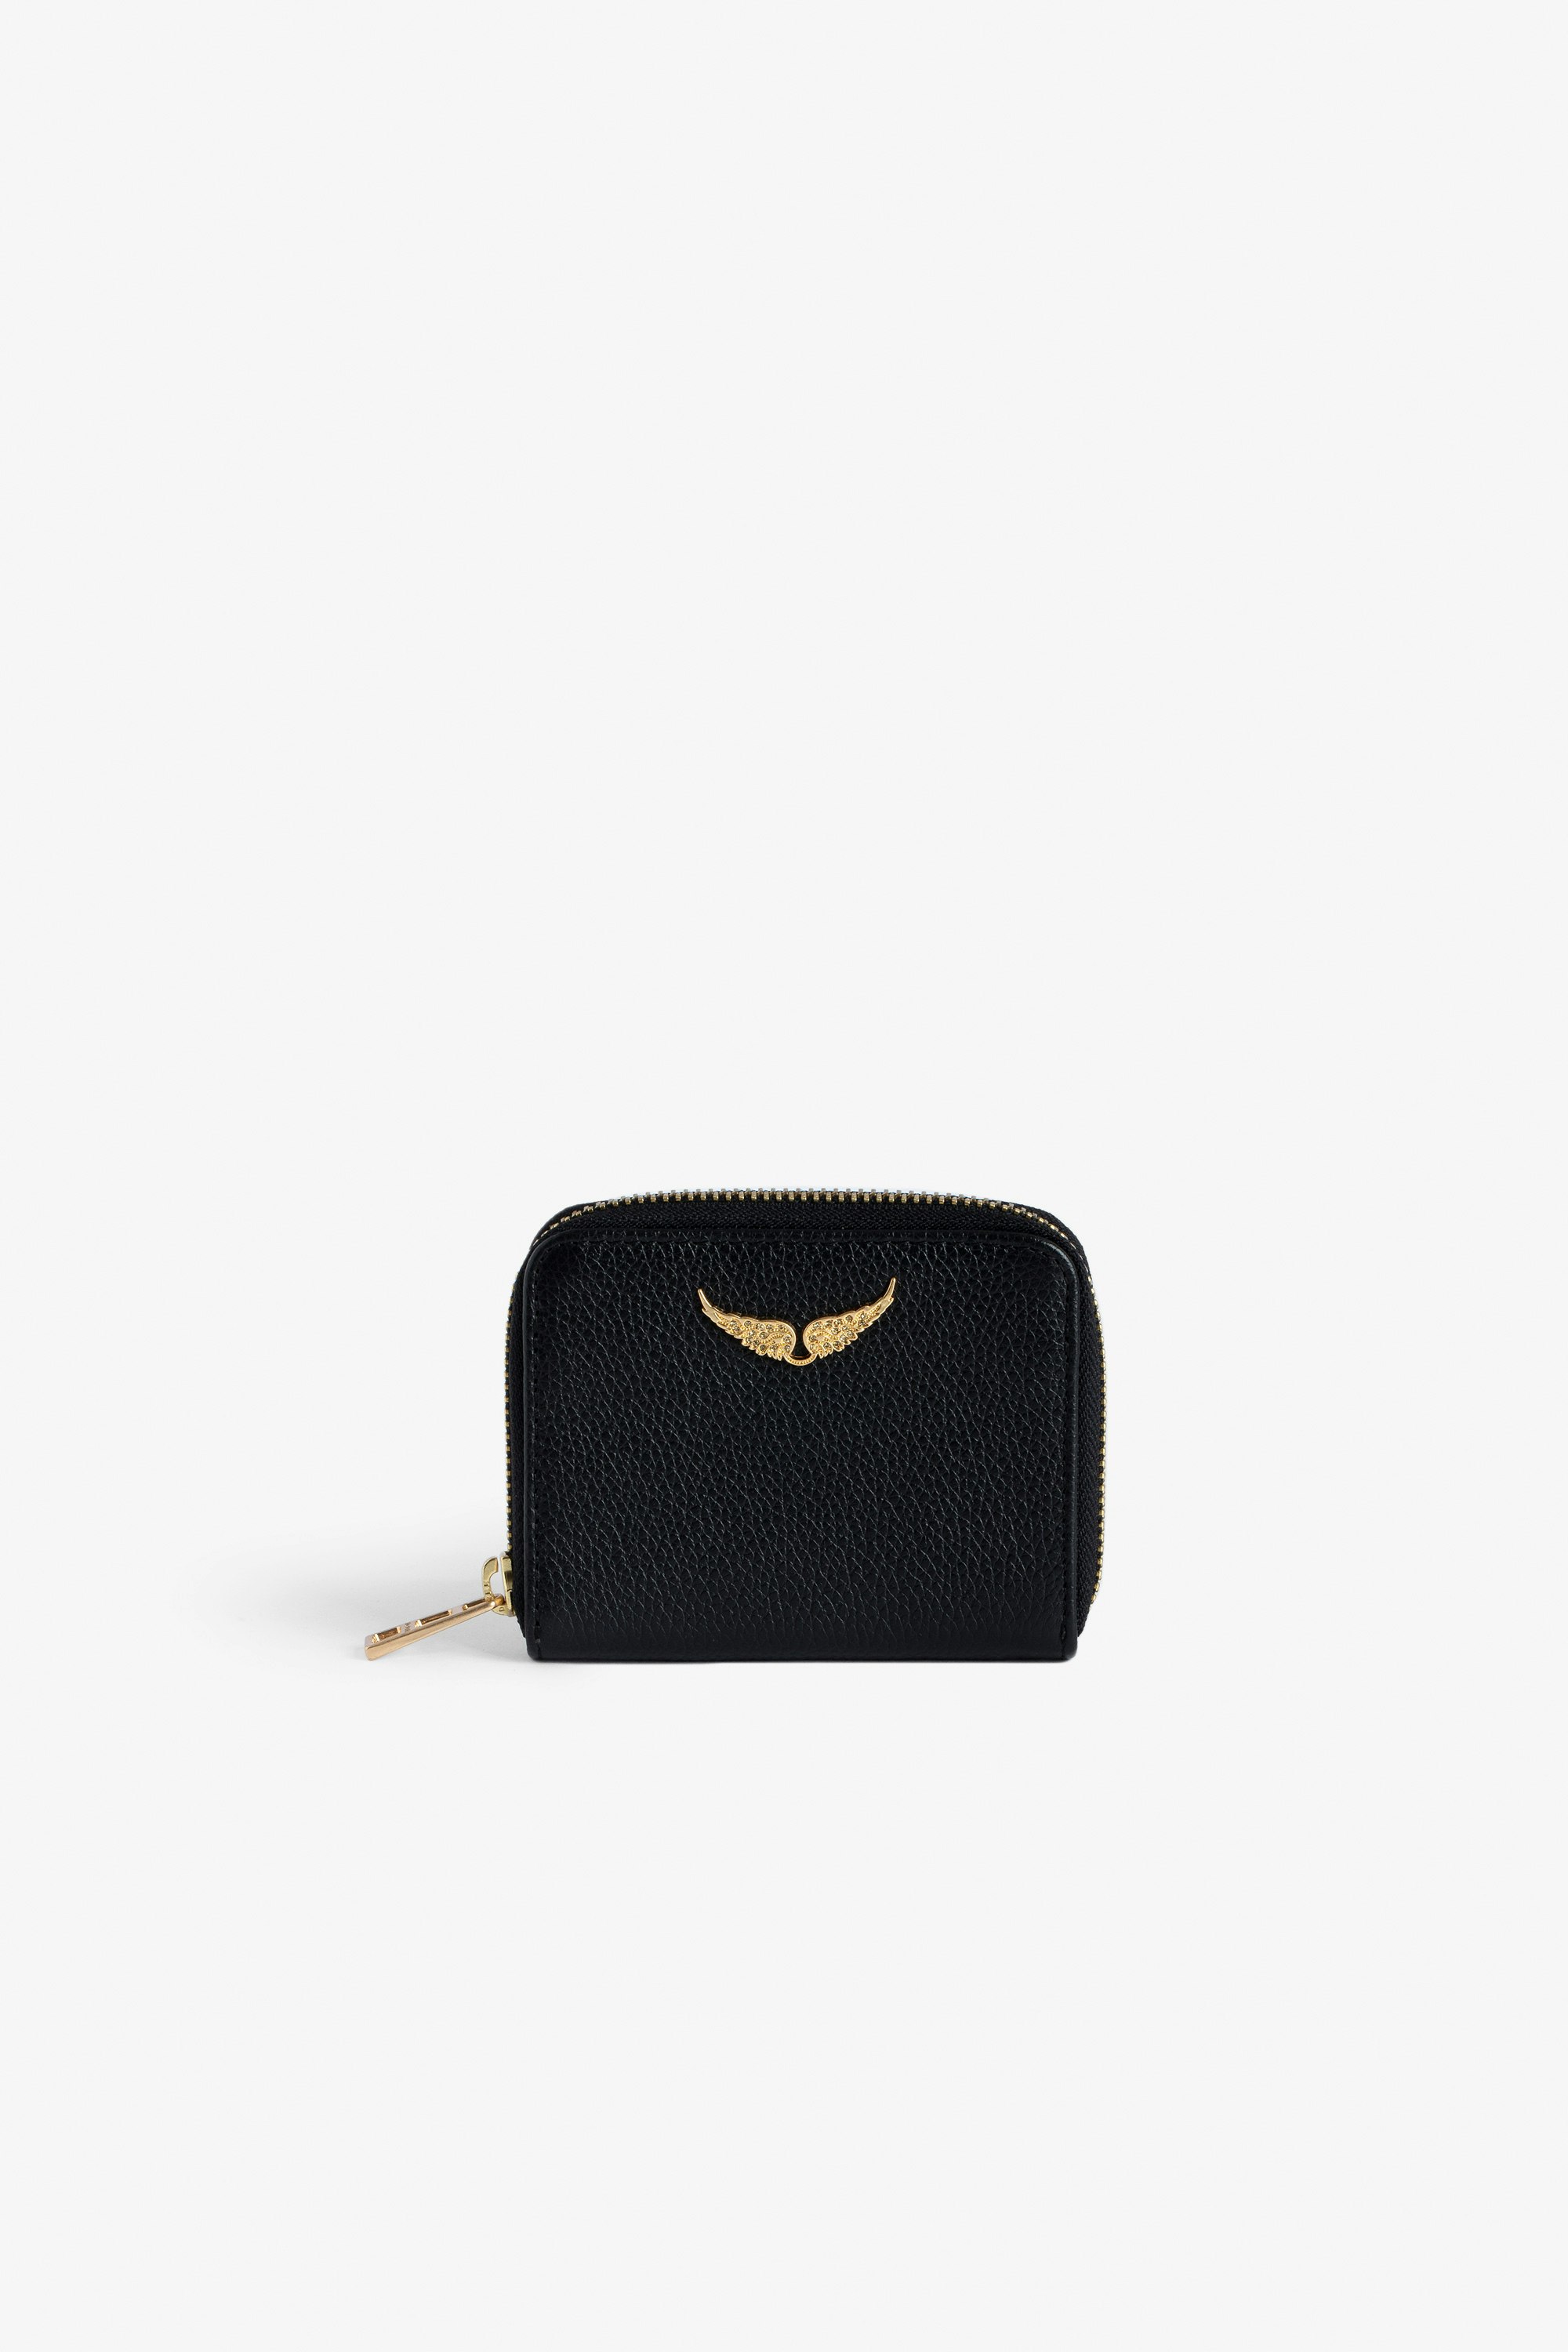 Porte-Monnaie Mini ZV - Women’s black grained leather wallet with gold-tone diamanté wings charm.